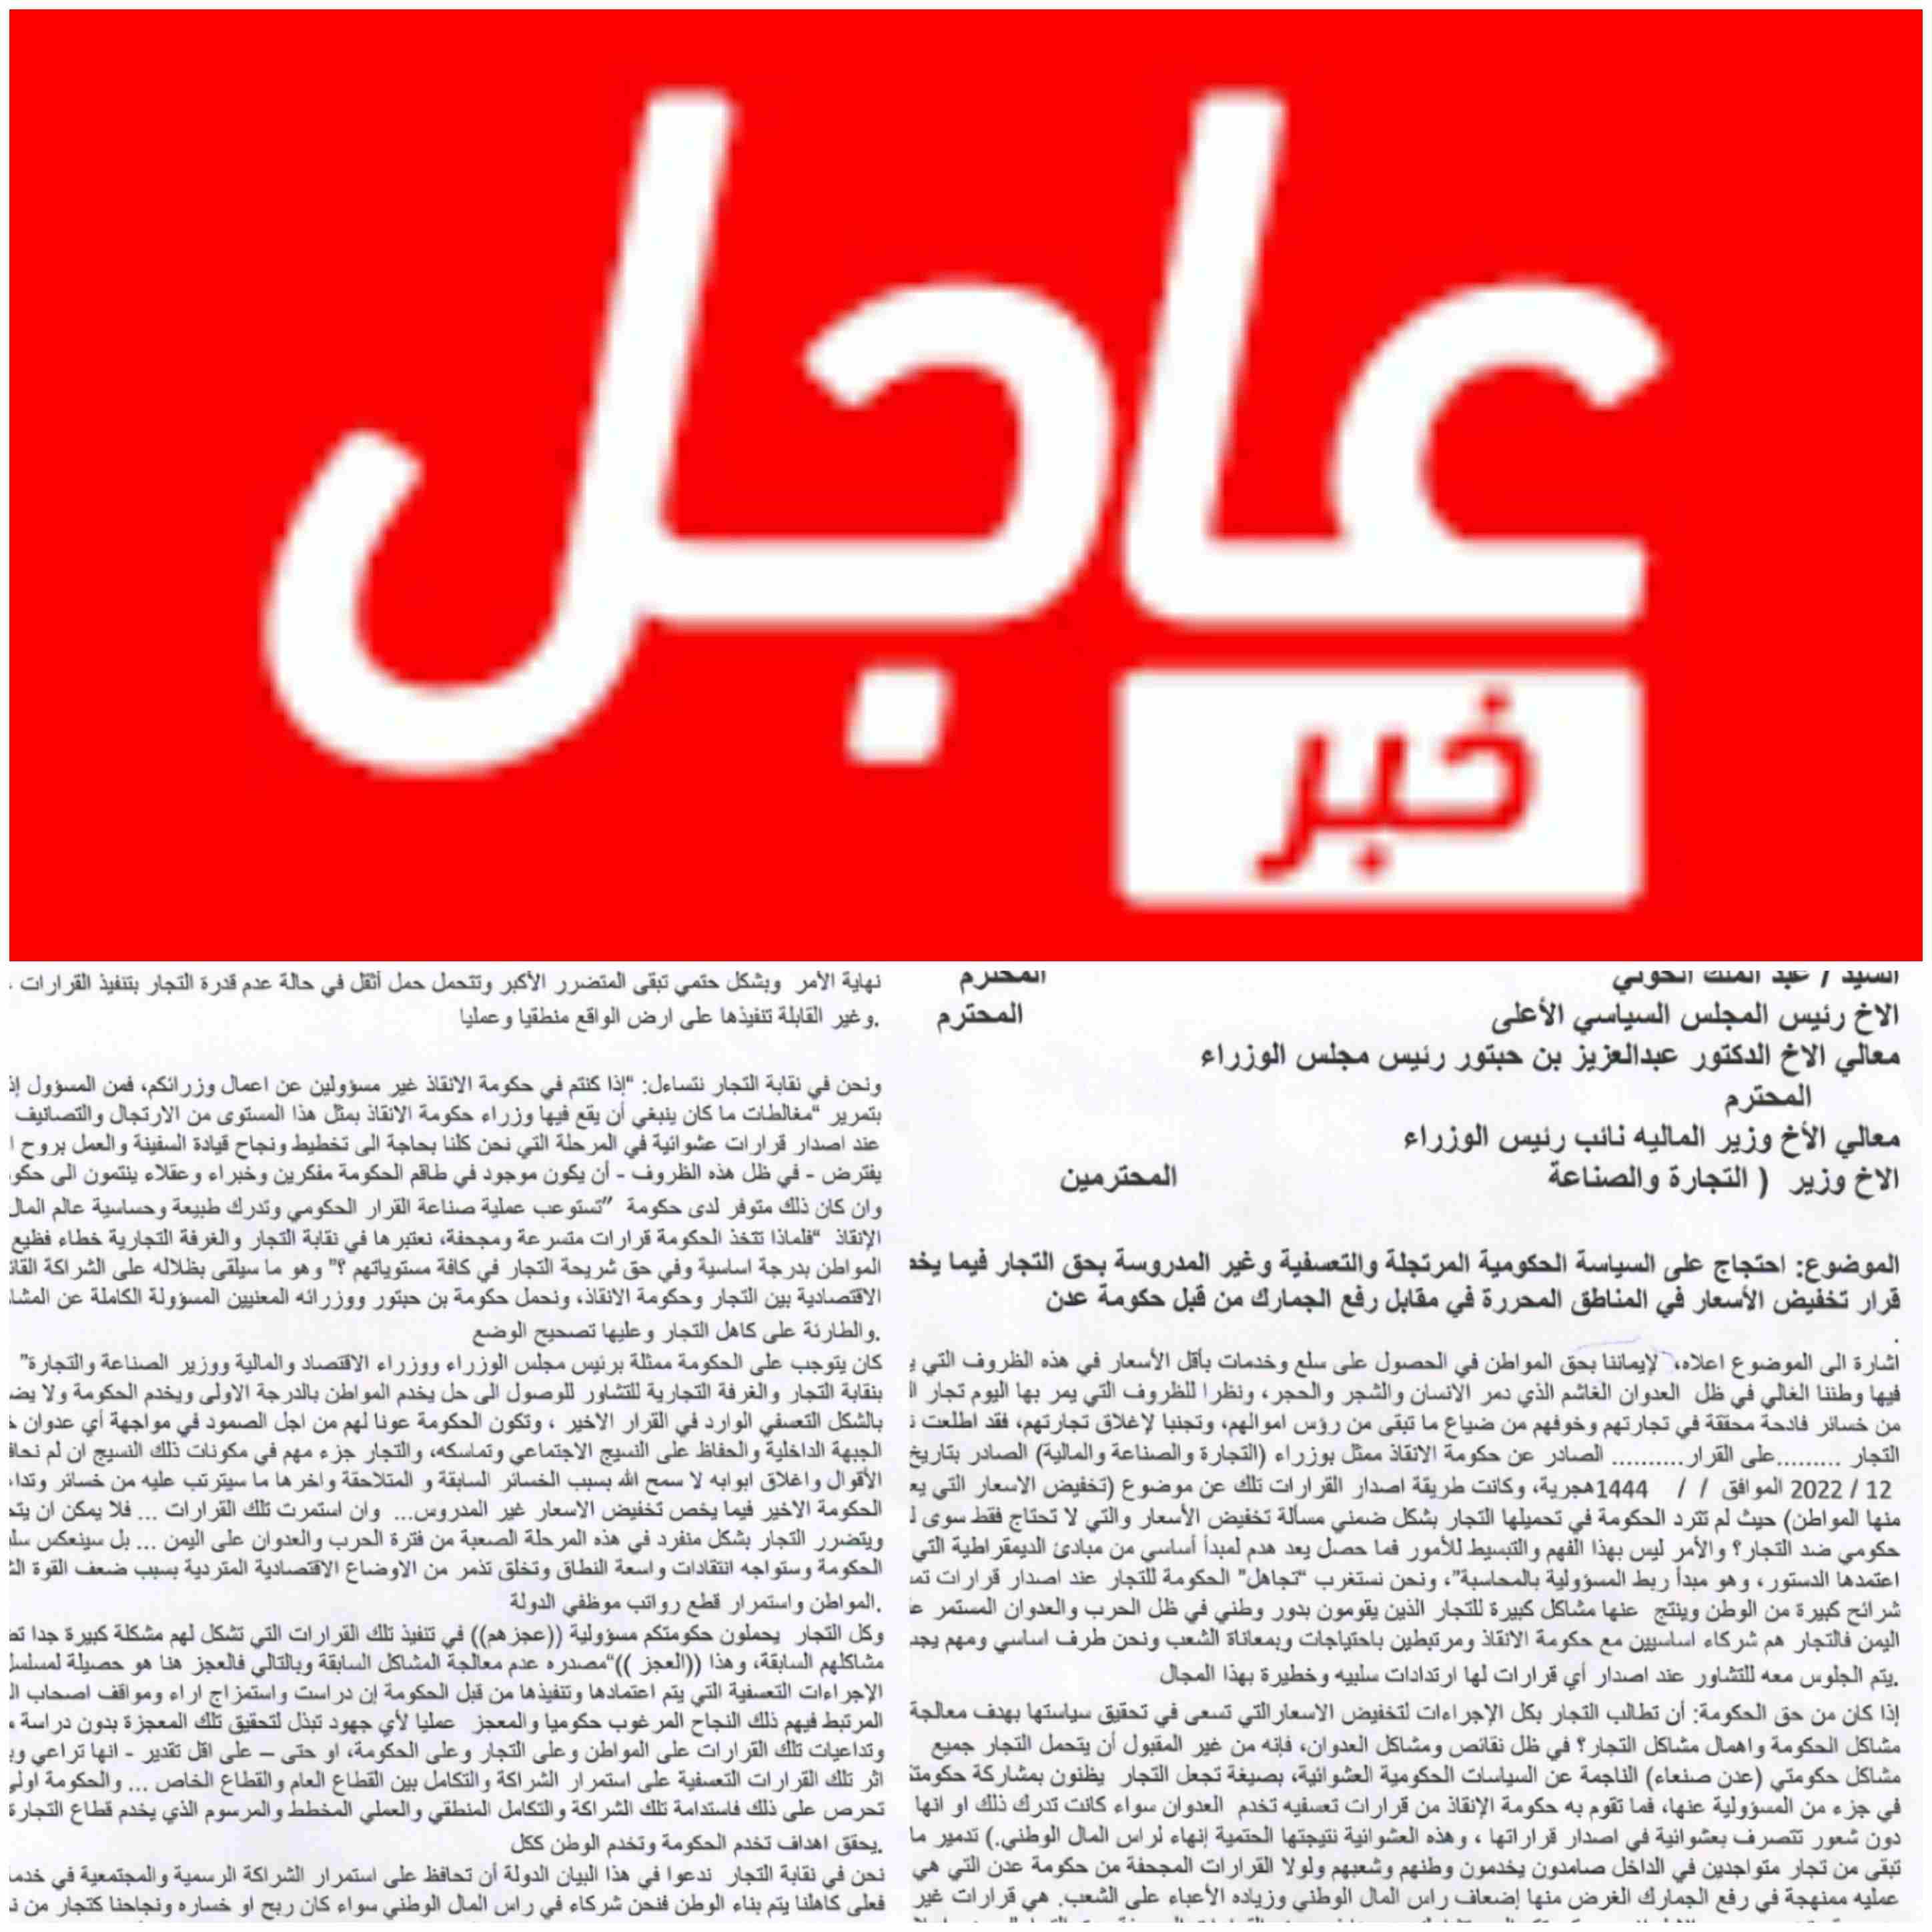 في بيان هام .. نقابة التجار والغرفة التجارية يحتجون على تعسفات حكومة الحوثيين بصنعاء ويهددون بالاضراب الشامل ..!!